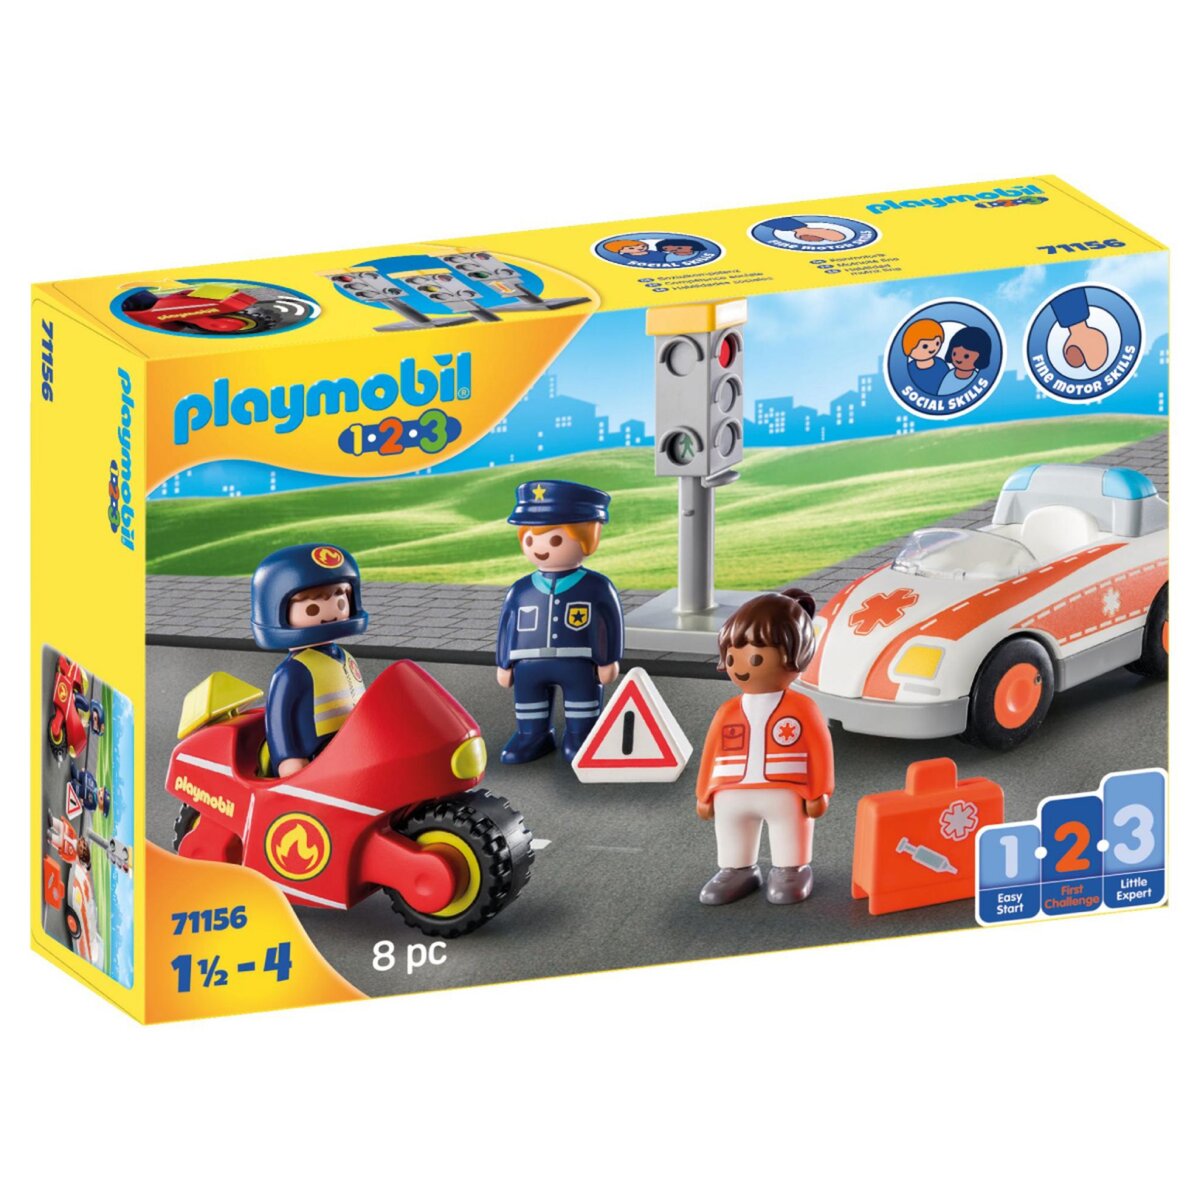 71157 - Playmobil 1.2.3 - Aire de jeux